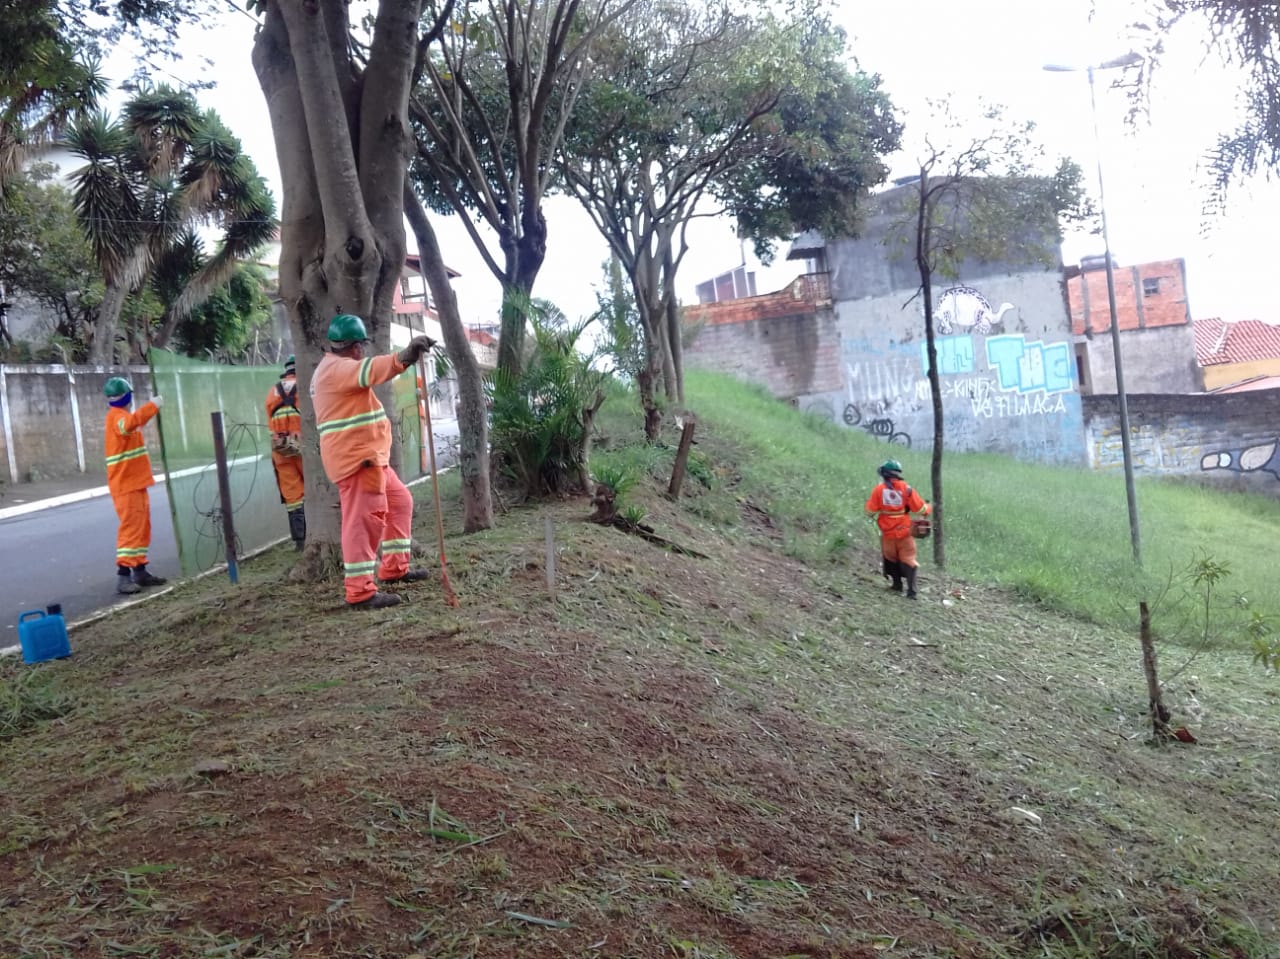 #PraCegoVer - Trabalhadores da Subprefeitura cortam a grama na praça. O corte está sendo feito em uma   encosta. Há árvores do lado esquerdo.